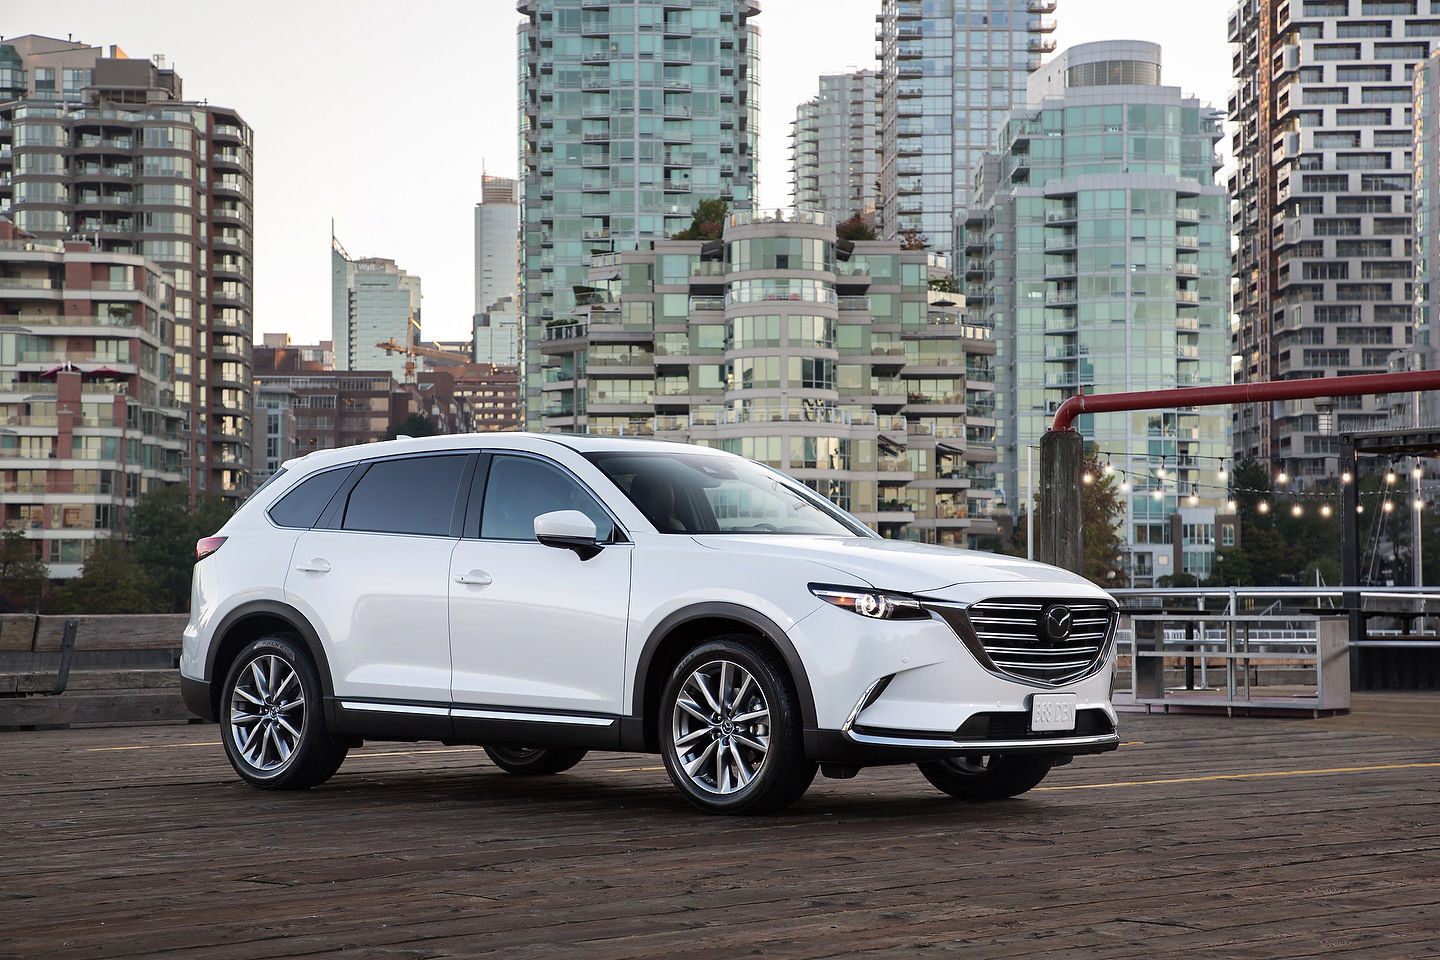 Des technologies plus évoluées pour le Mazda CX-9 2019